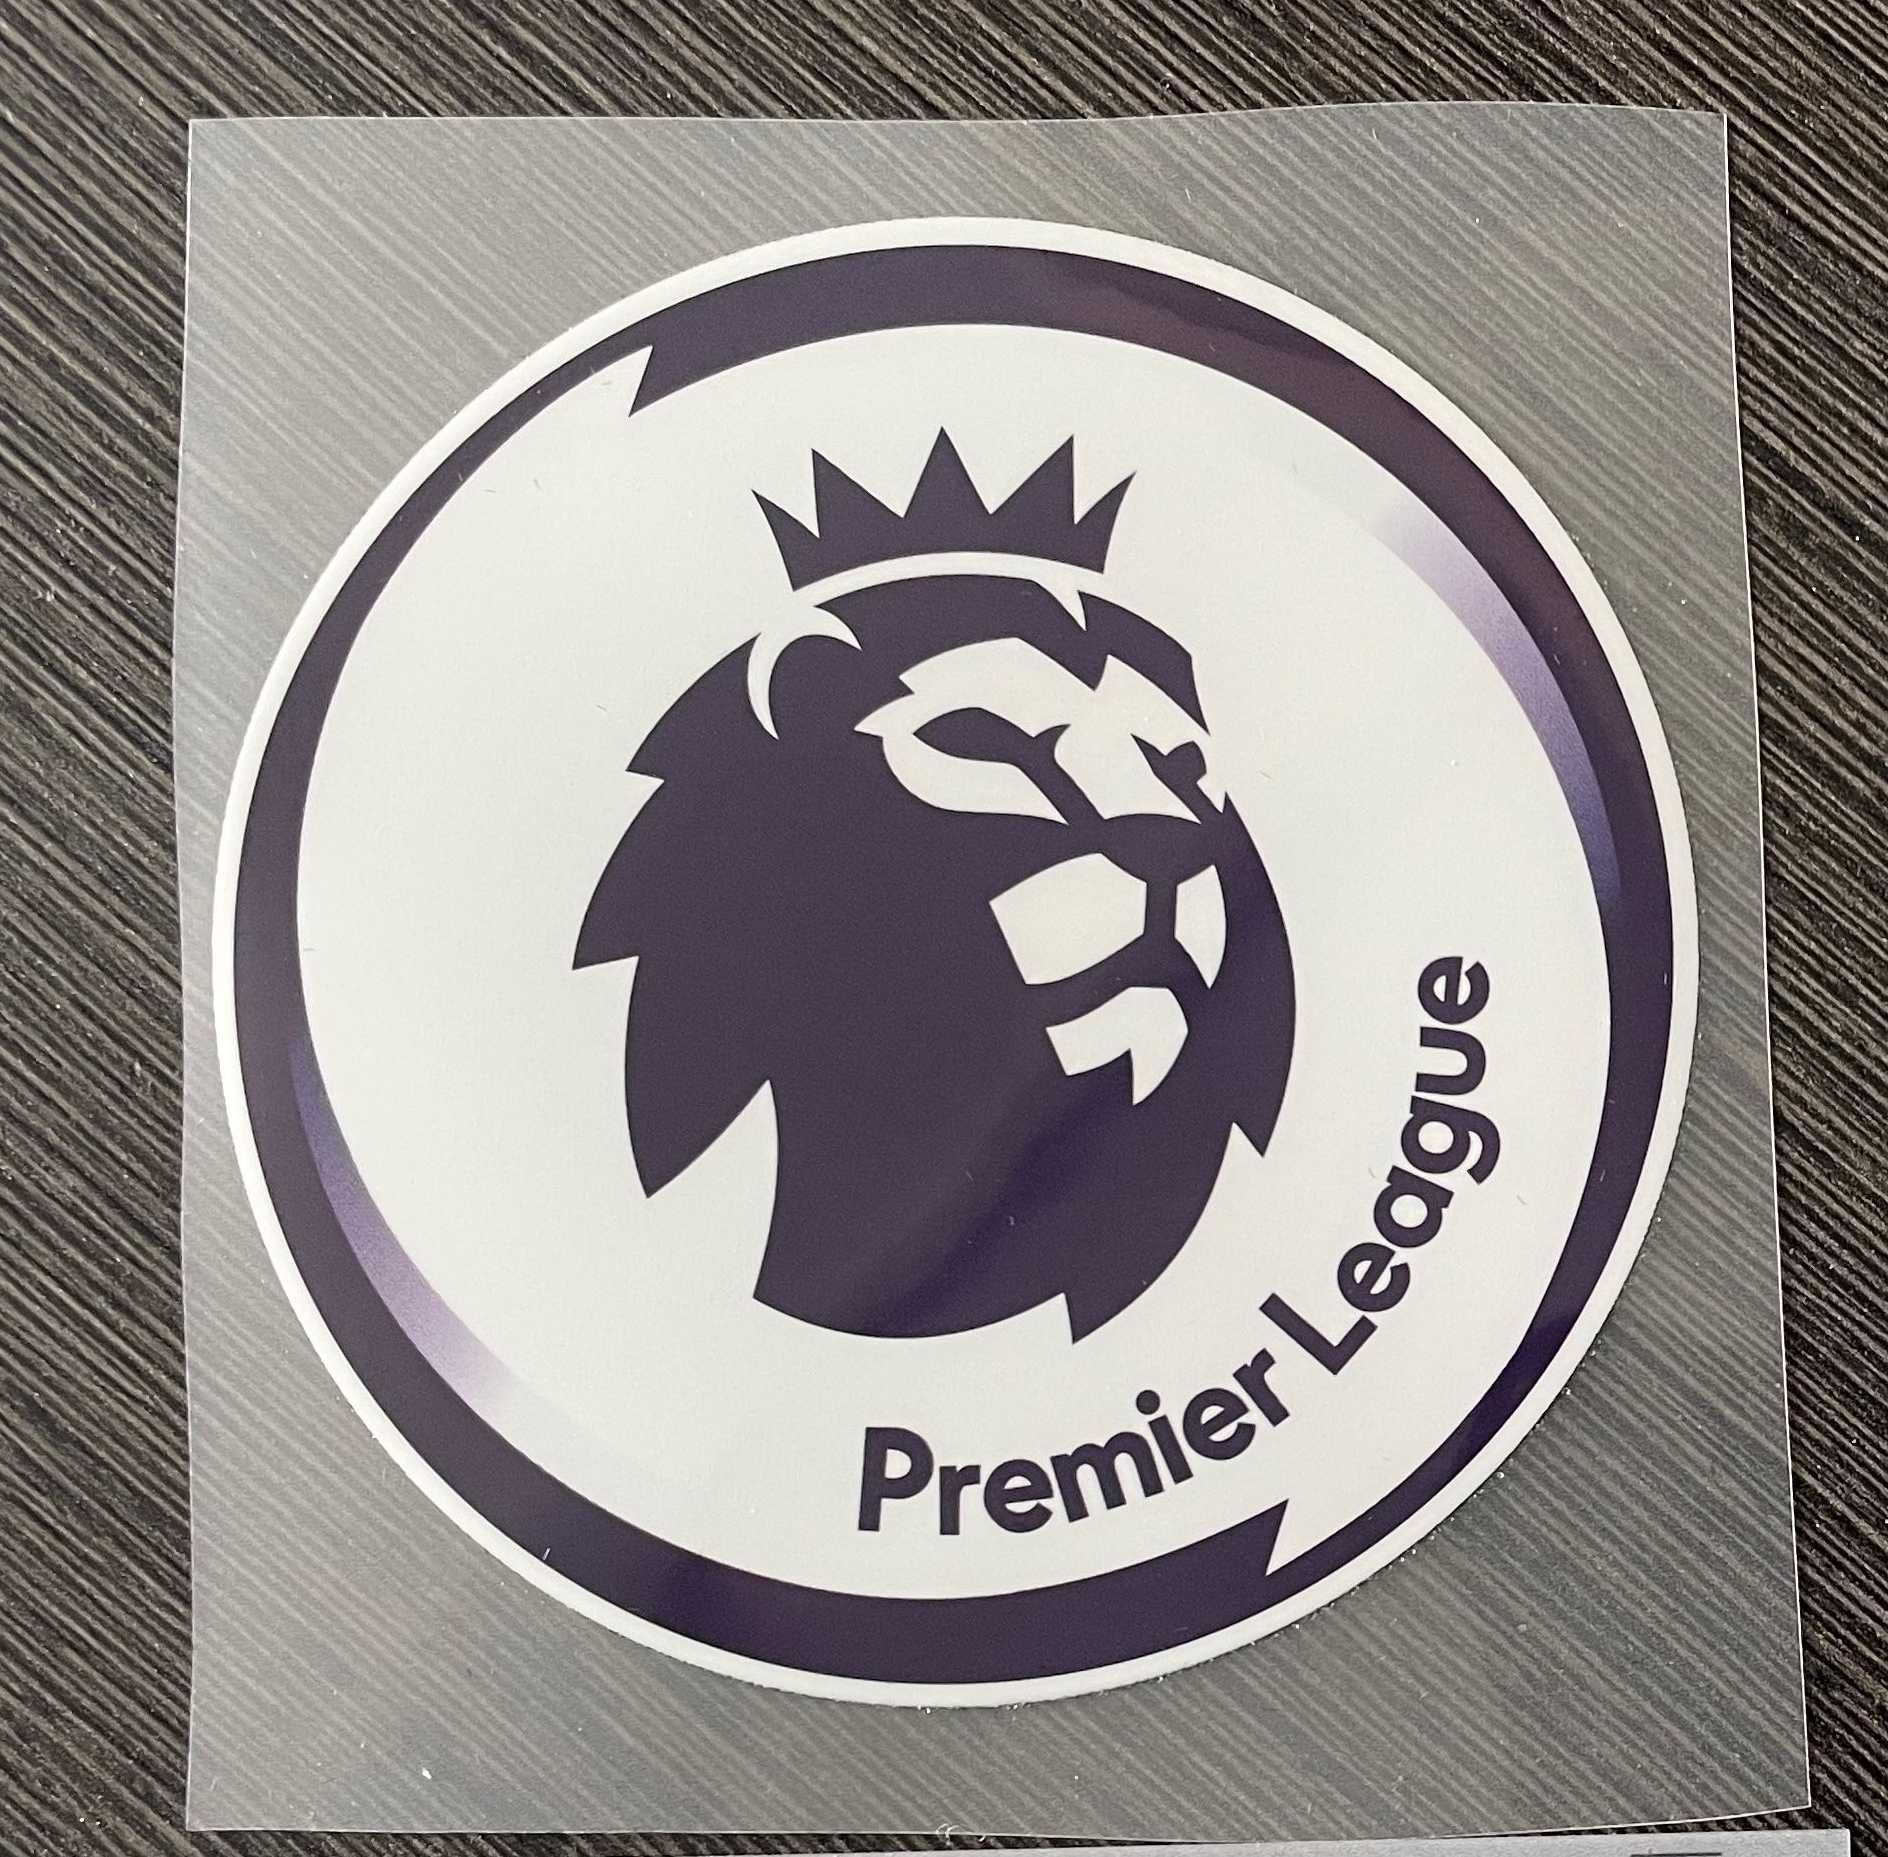 Premier League Patch